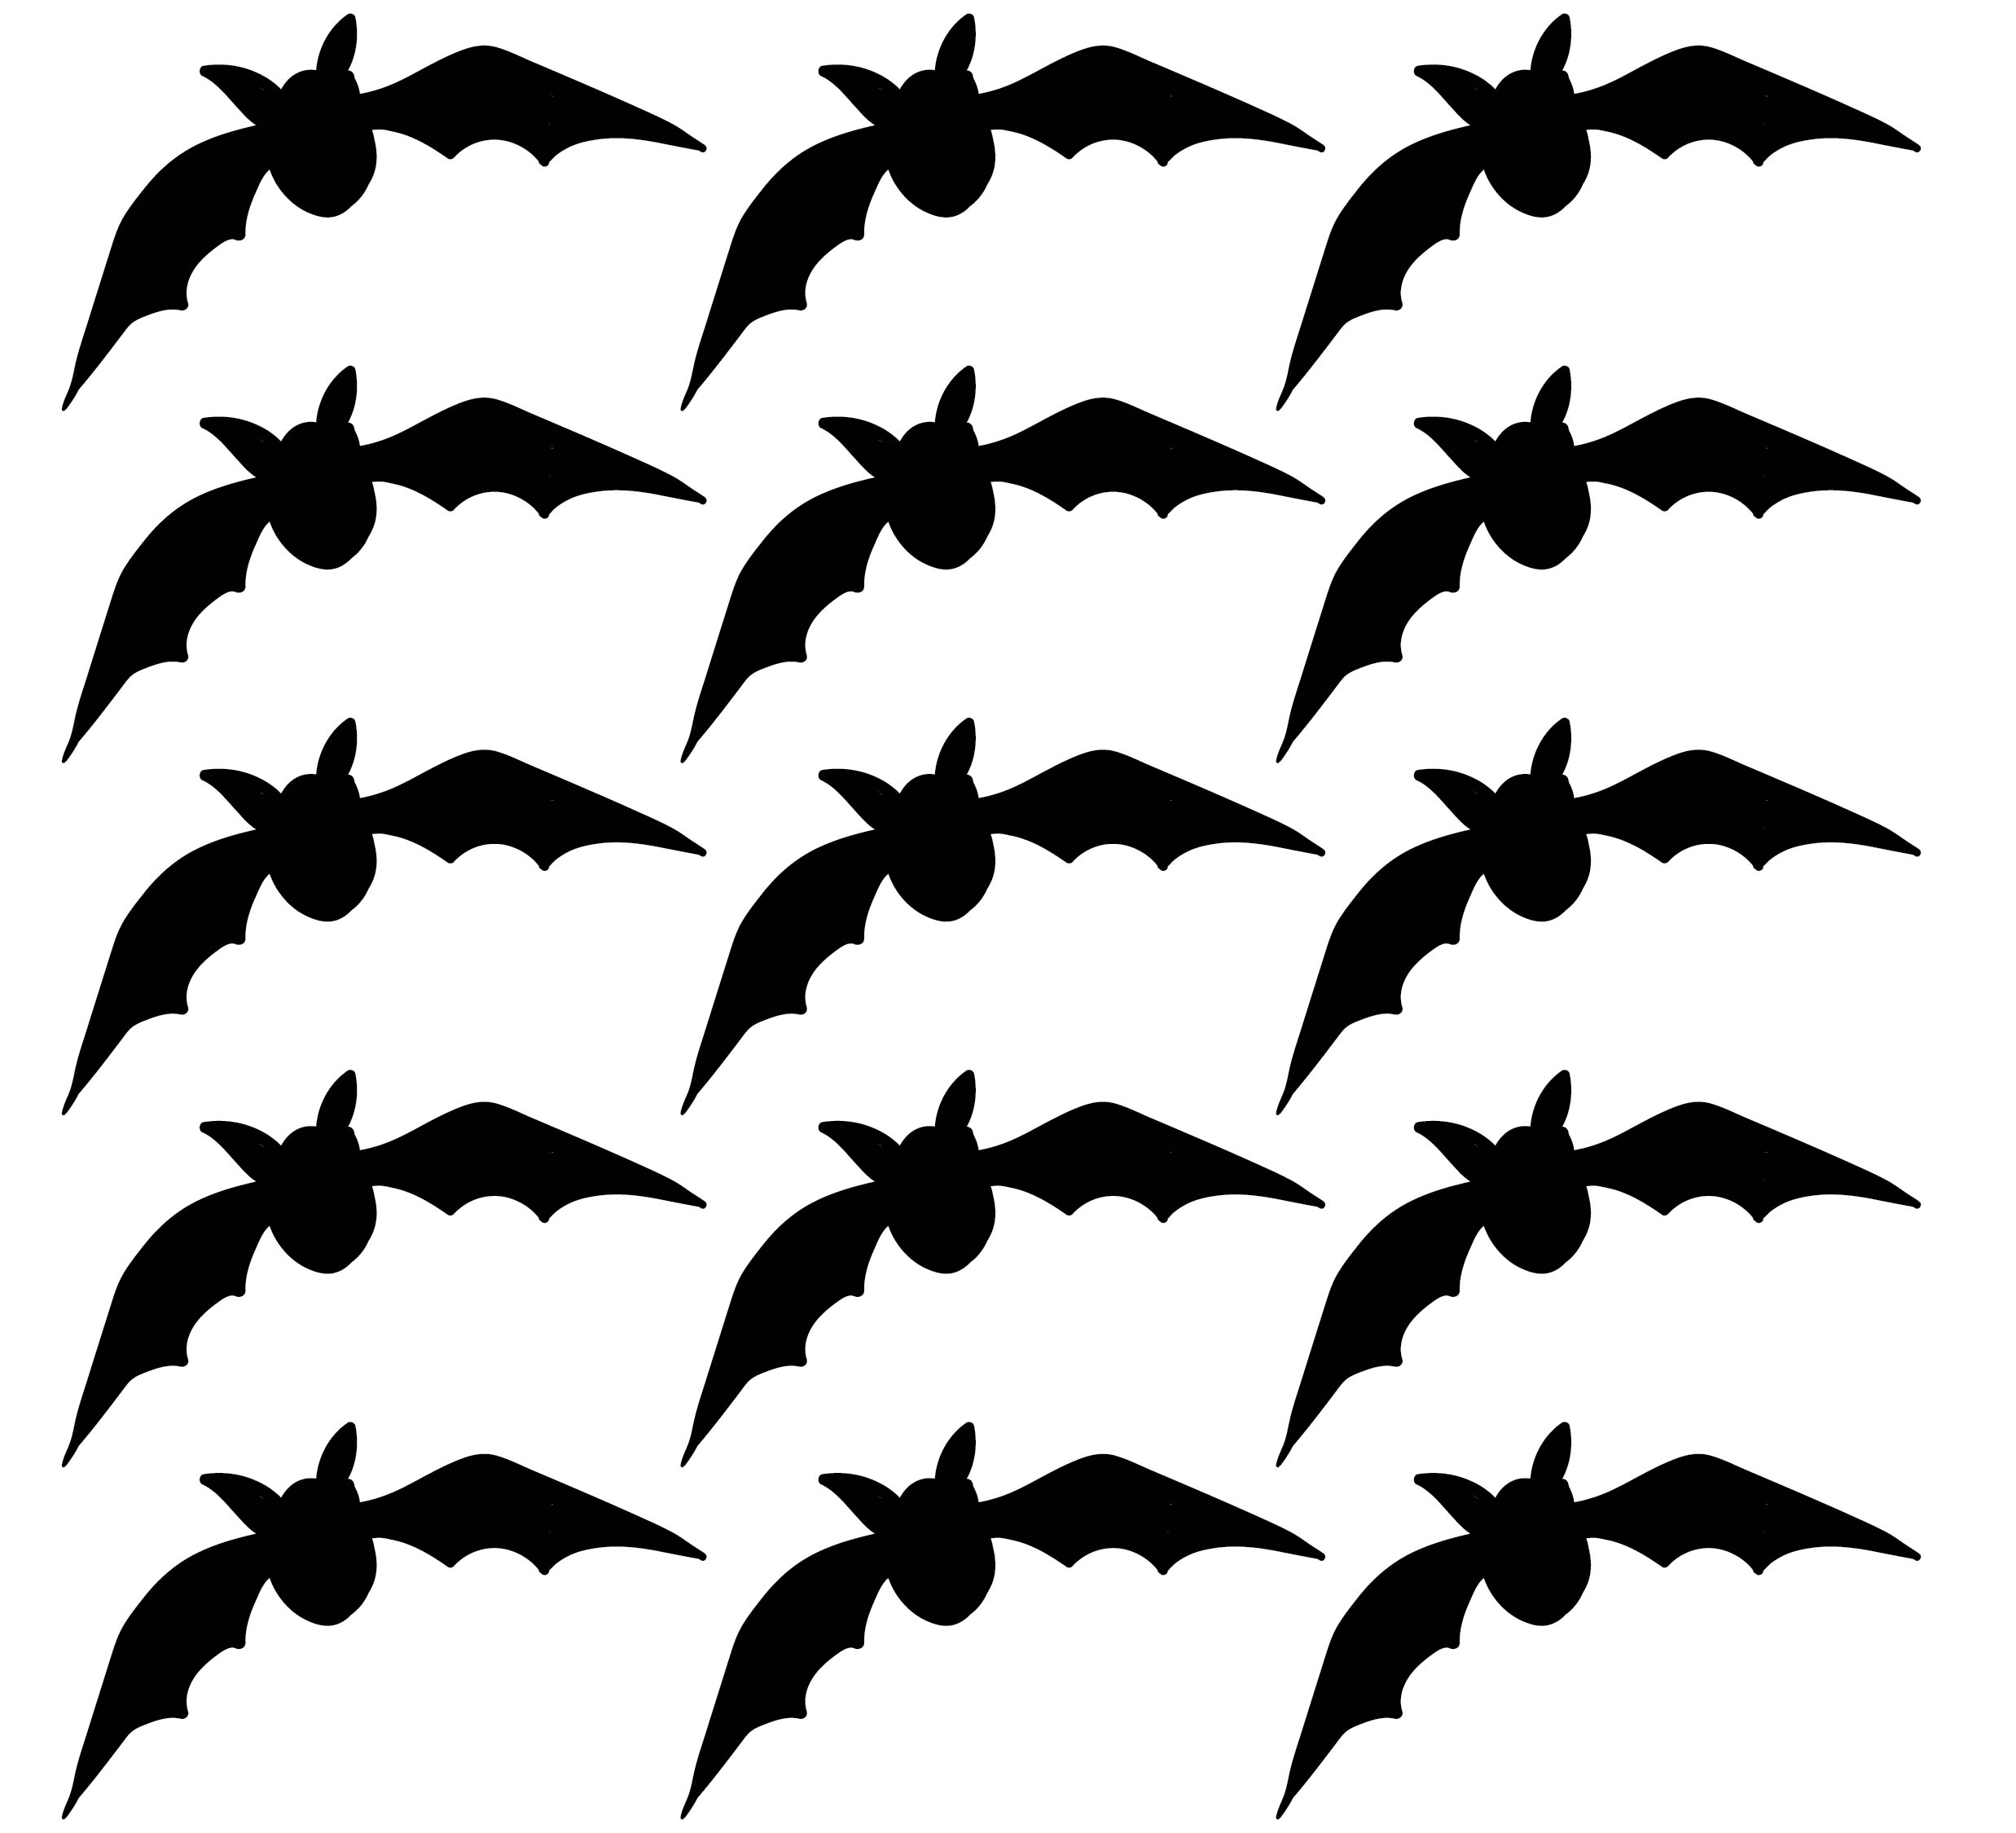 Bat Cutouts Printable